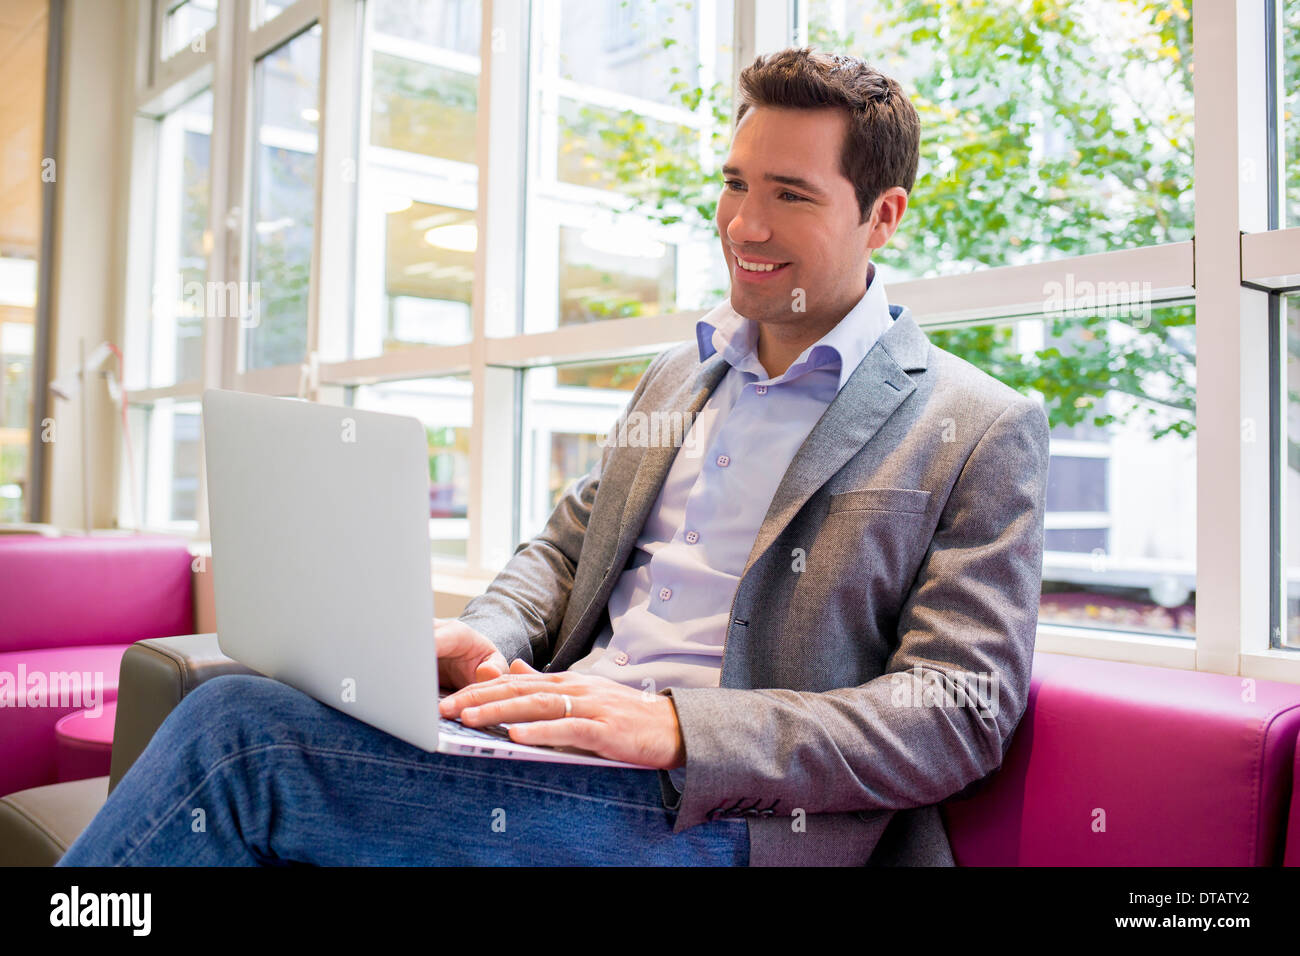 Glücklich lächelnd jungen Geschäftsmann arbeiten mit Laptop auf sofa Stockfoto